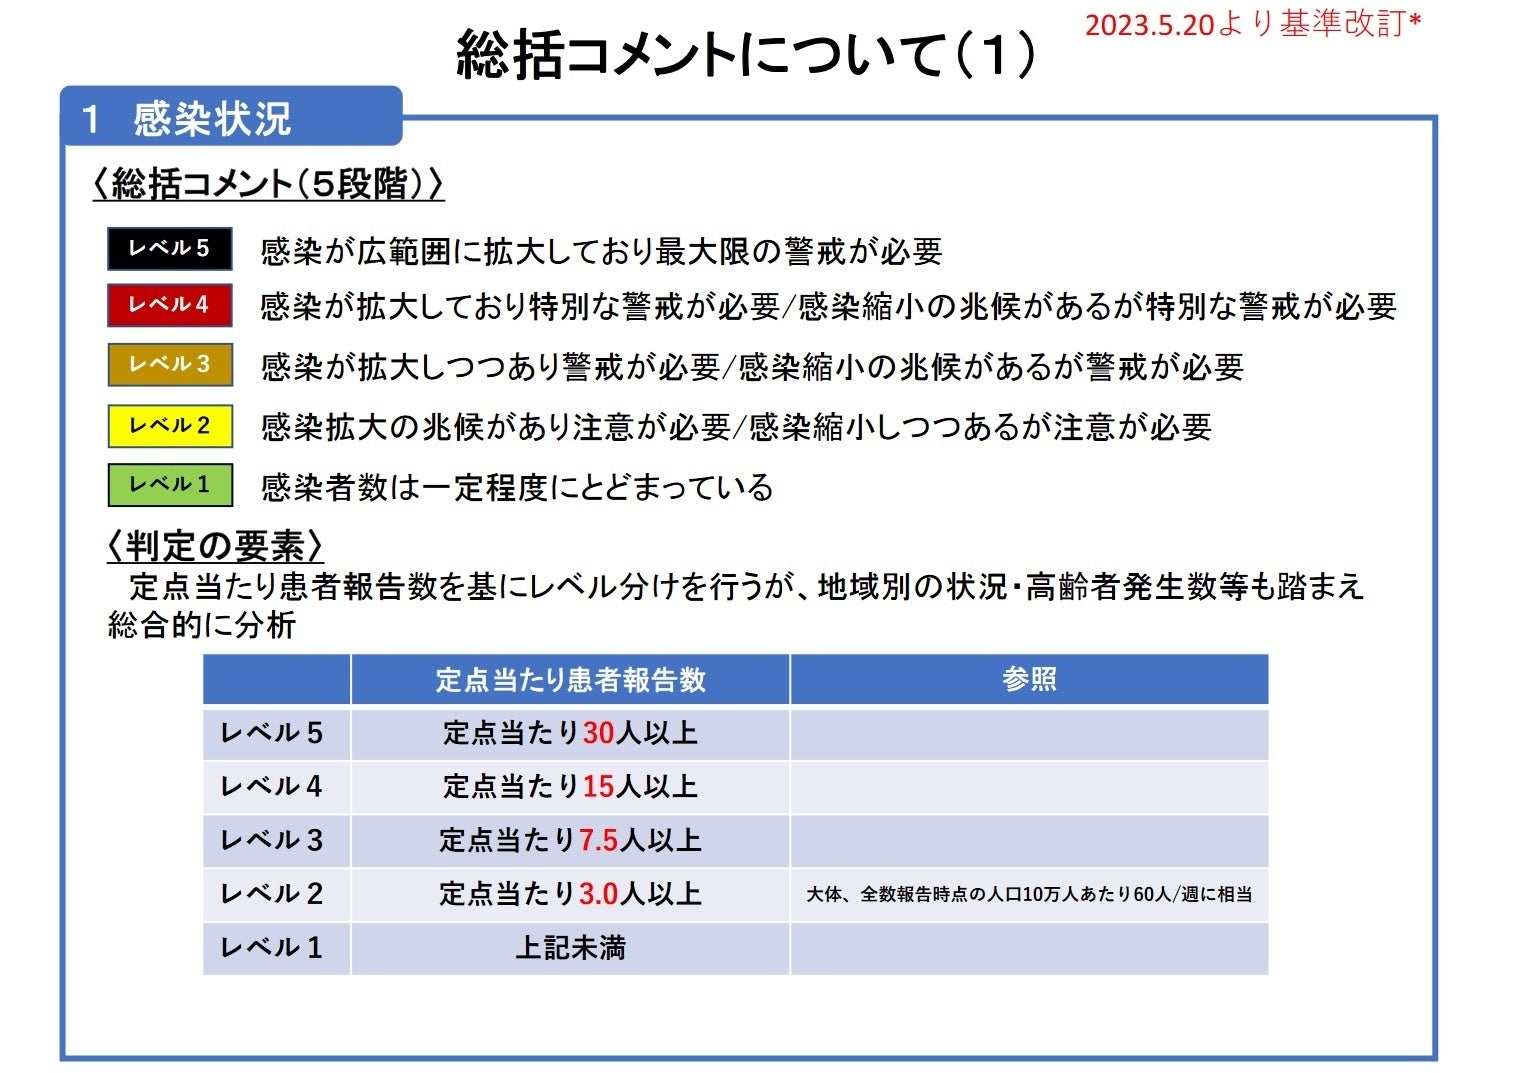 【岡山大学】岡山県内の感染状況・医療提供体制の分析について（2023年12月29日現在）